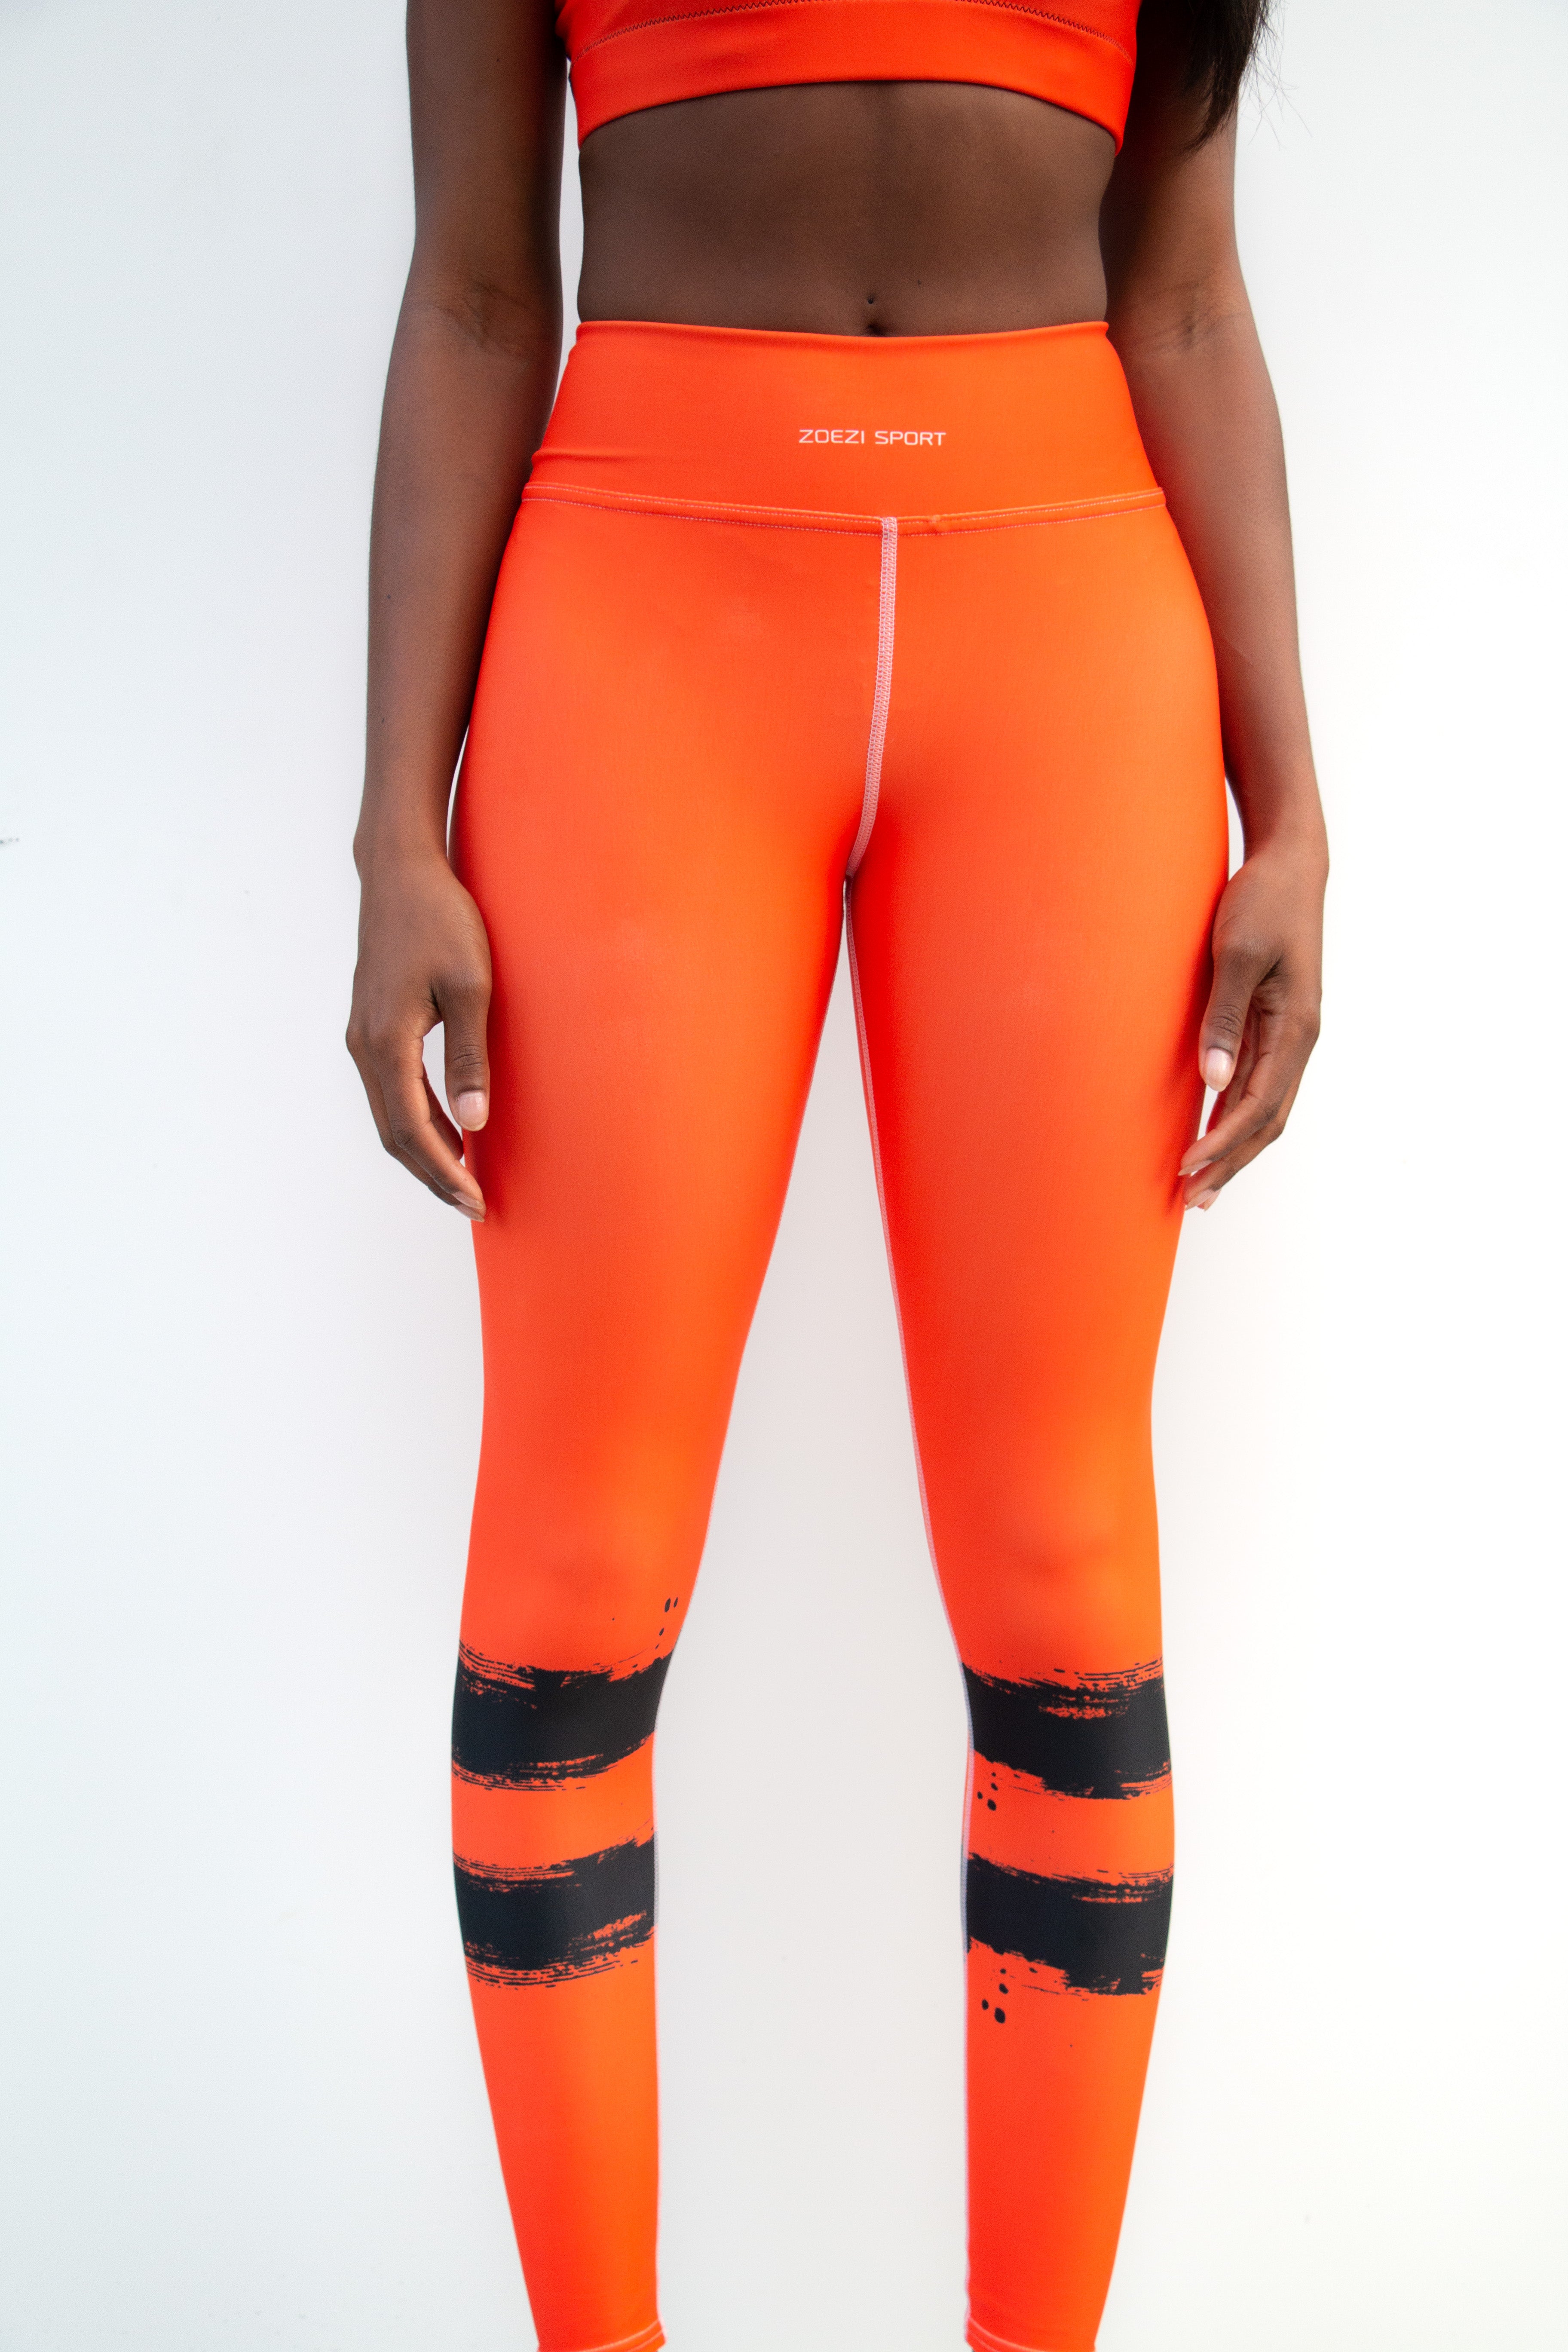 Sport Light Fitincline Women's Leggings Orange Leggings Kids Black